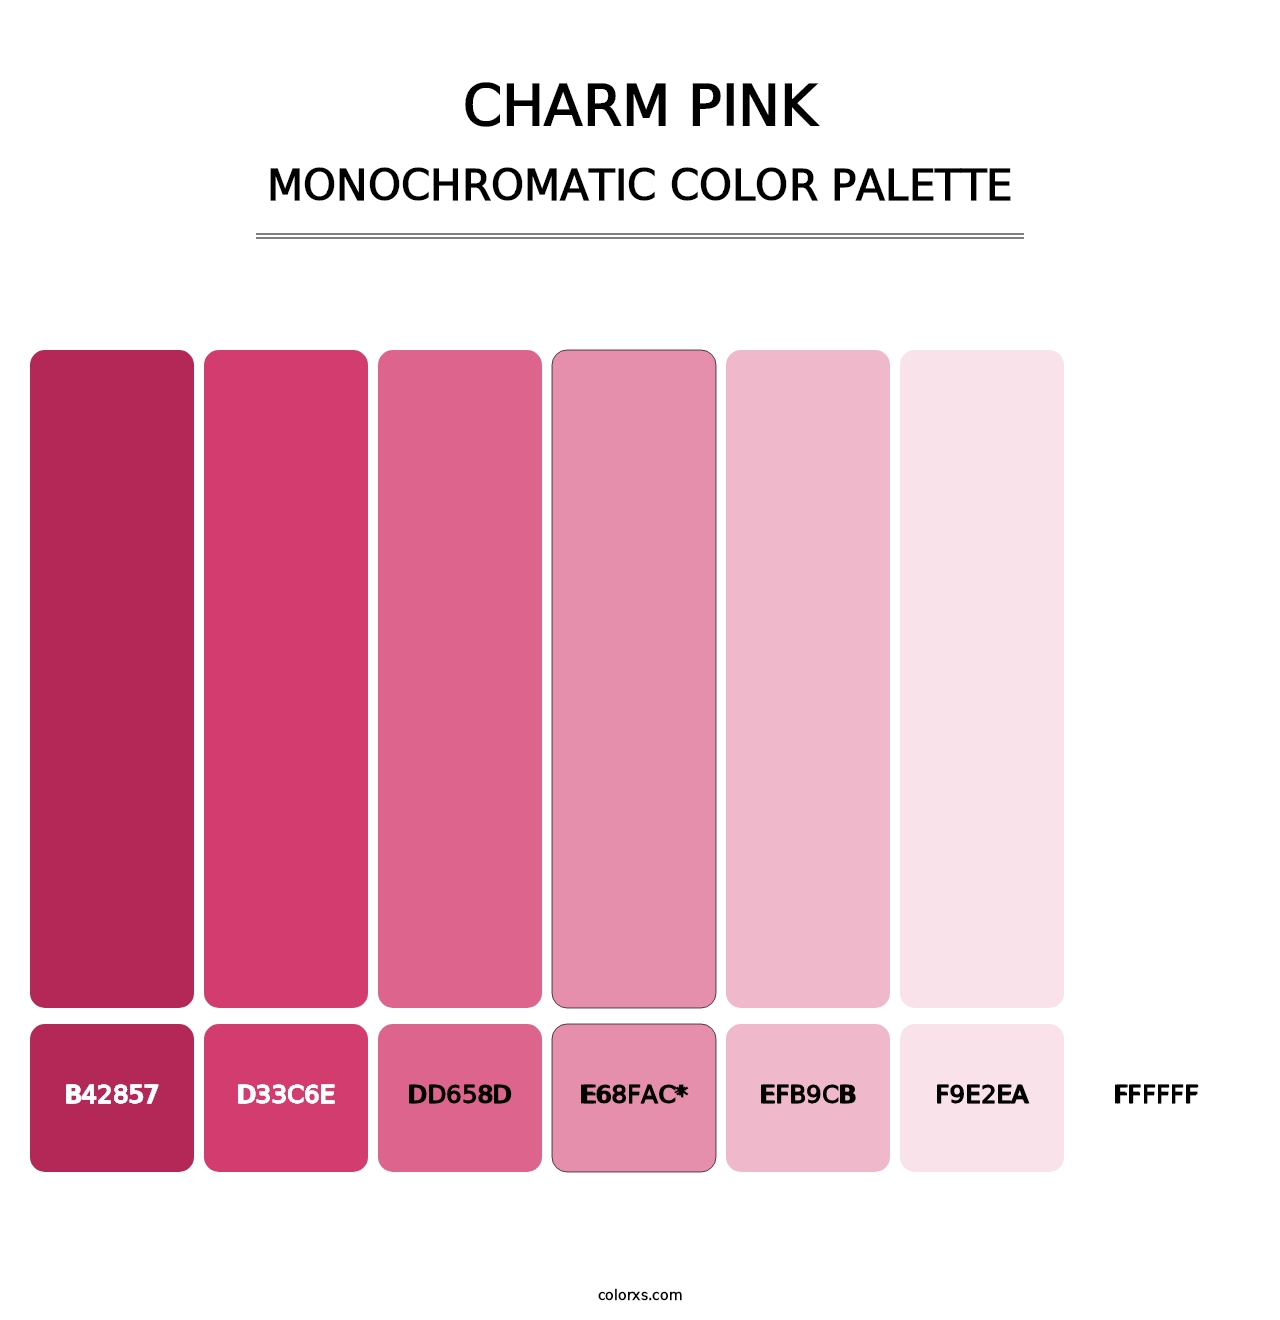 Charm Pink - Monochromatic Color Palette